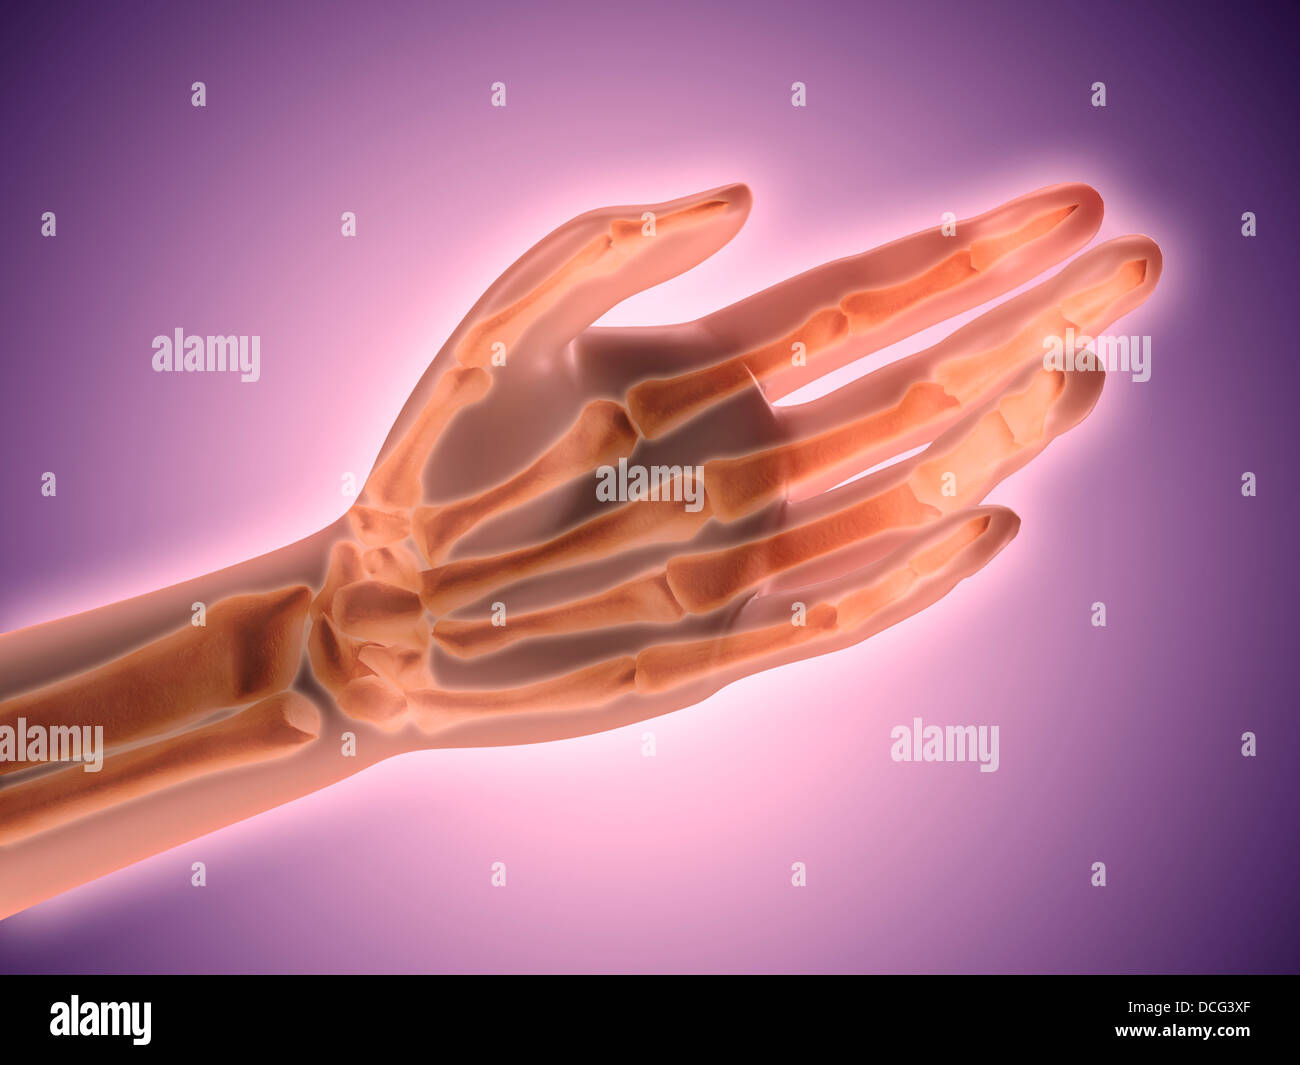 Image conceptuelle d'os de main humaine. Banque D'Images